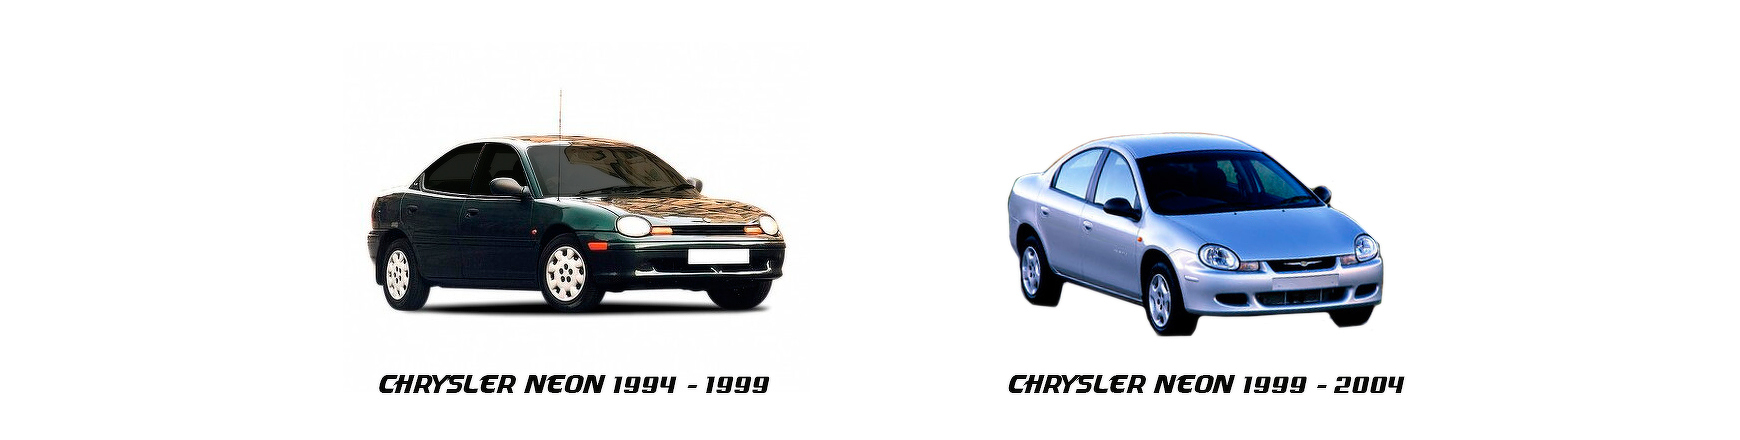 Chrysler Neon 1995 - 1996 - 1997 - 1998 - 1999